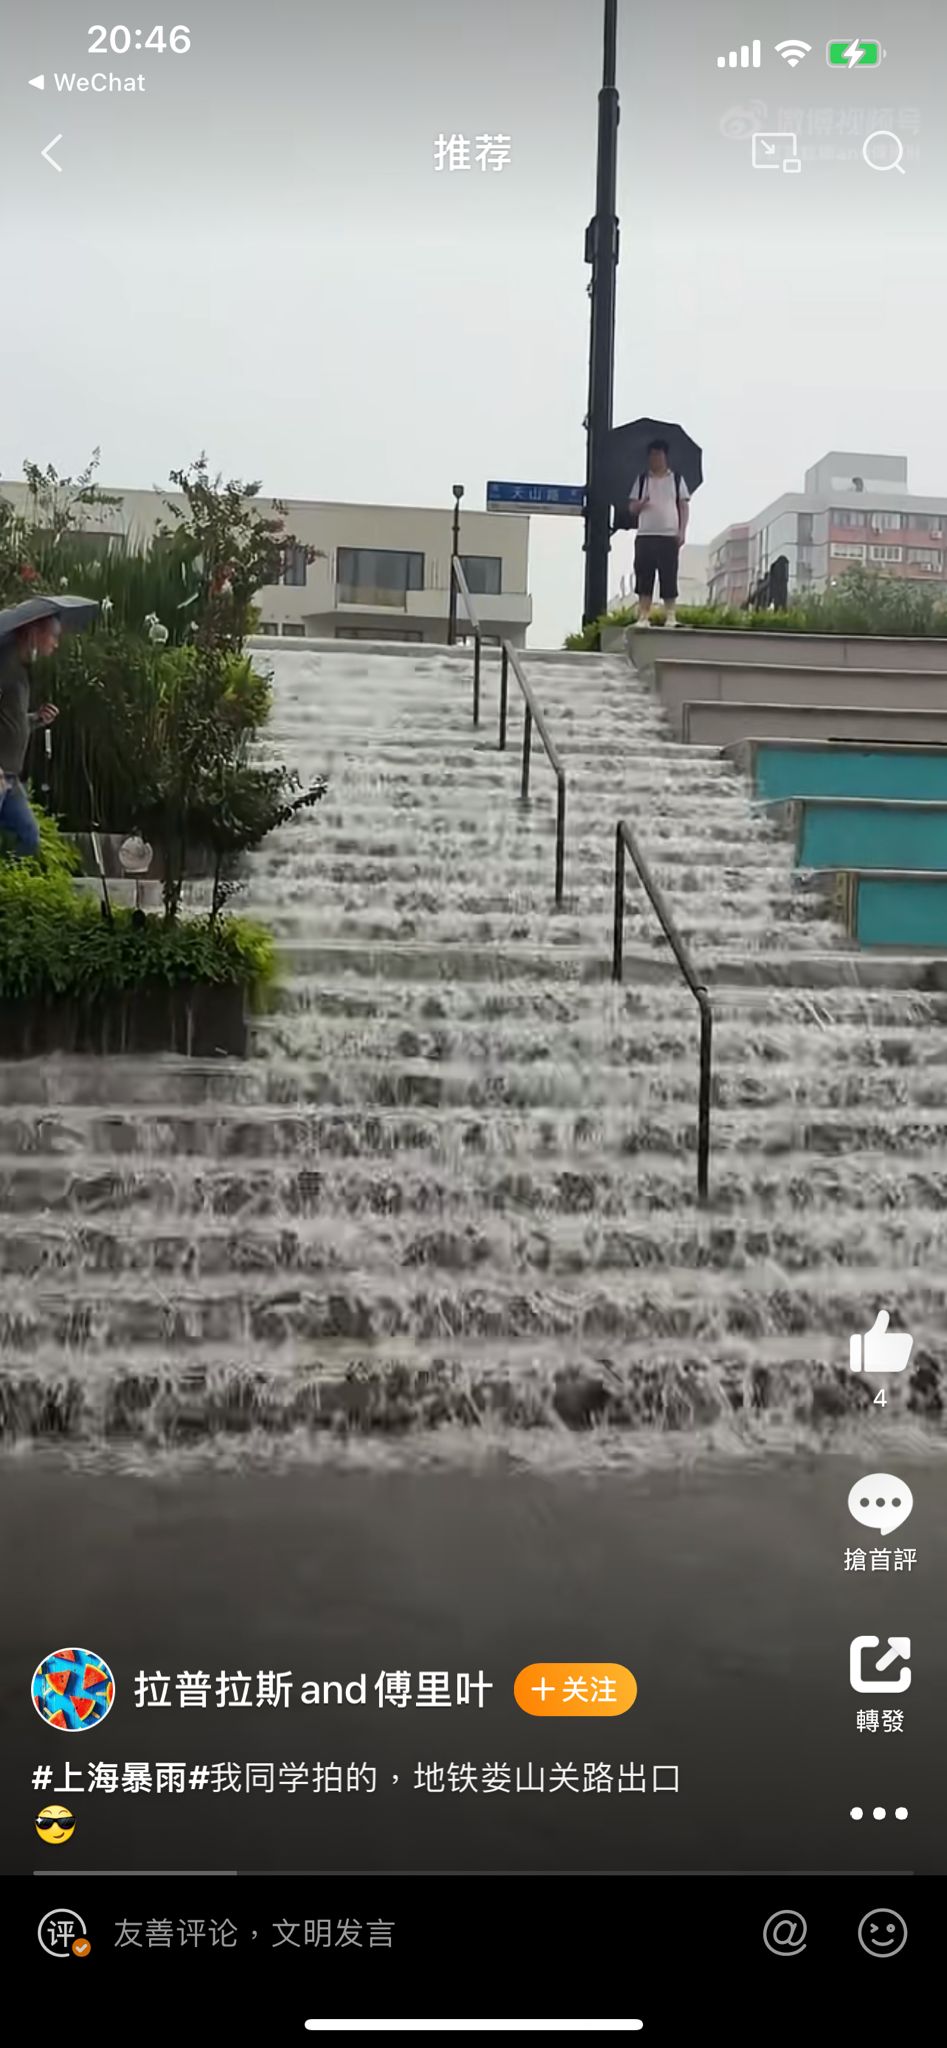 上海地鐵婁山關路站出口樓梯變瀑布。 微博